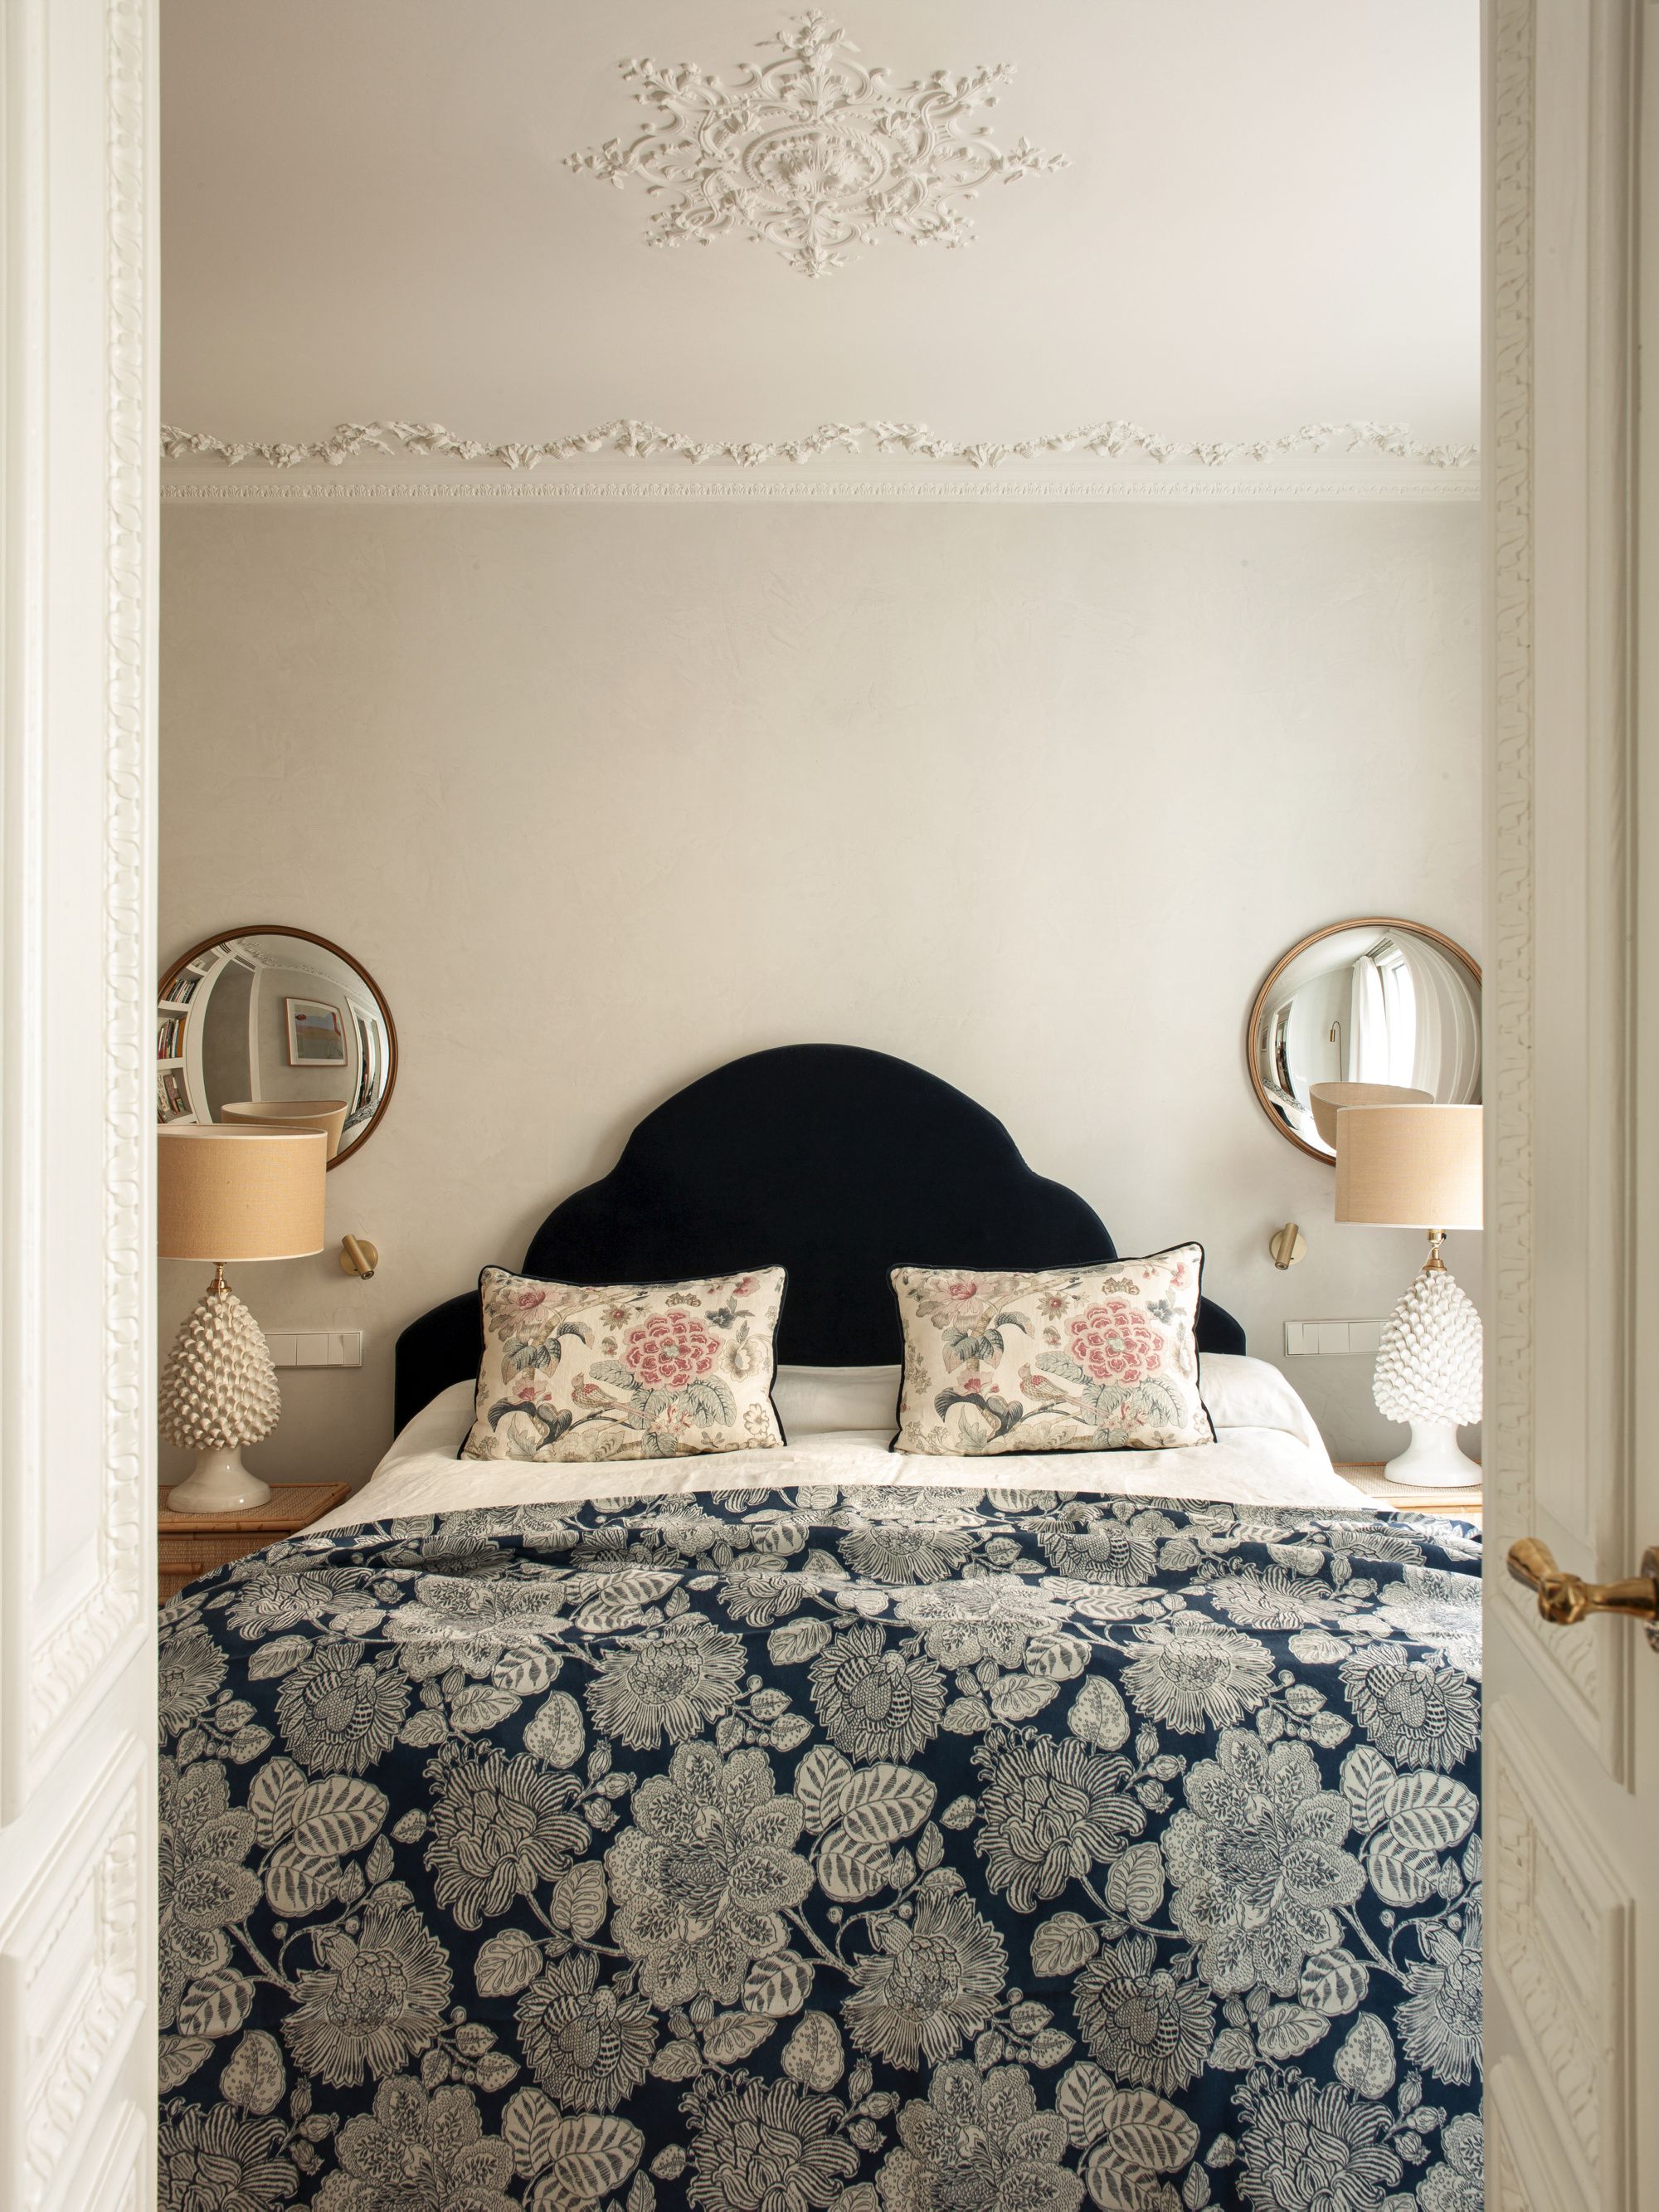 21 Ideas para decorar tu cuarto de forma fácil, lindísima y barata   Decoración de unas, Decoracion de dormitorio matrimonial, Dormitorios